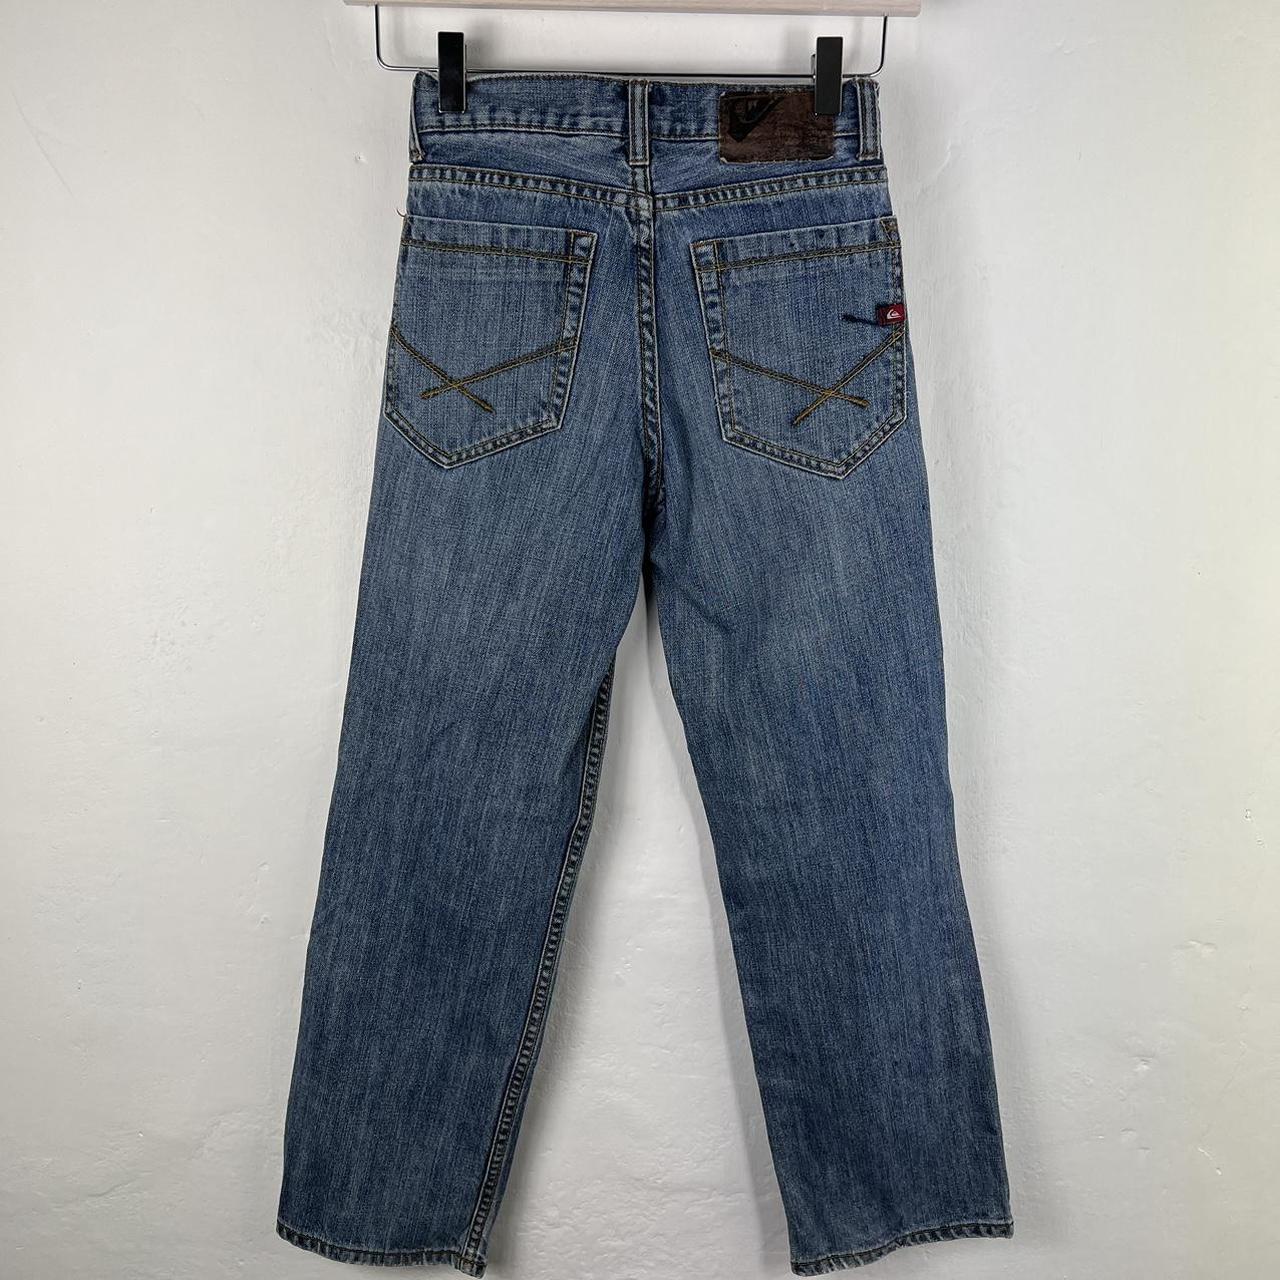 Quicksilver vintage jeans 26x30